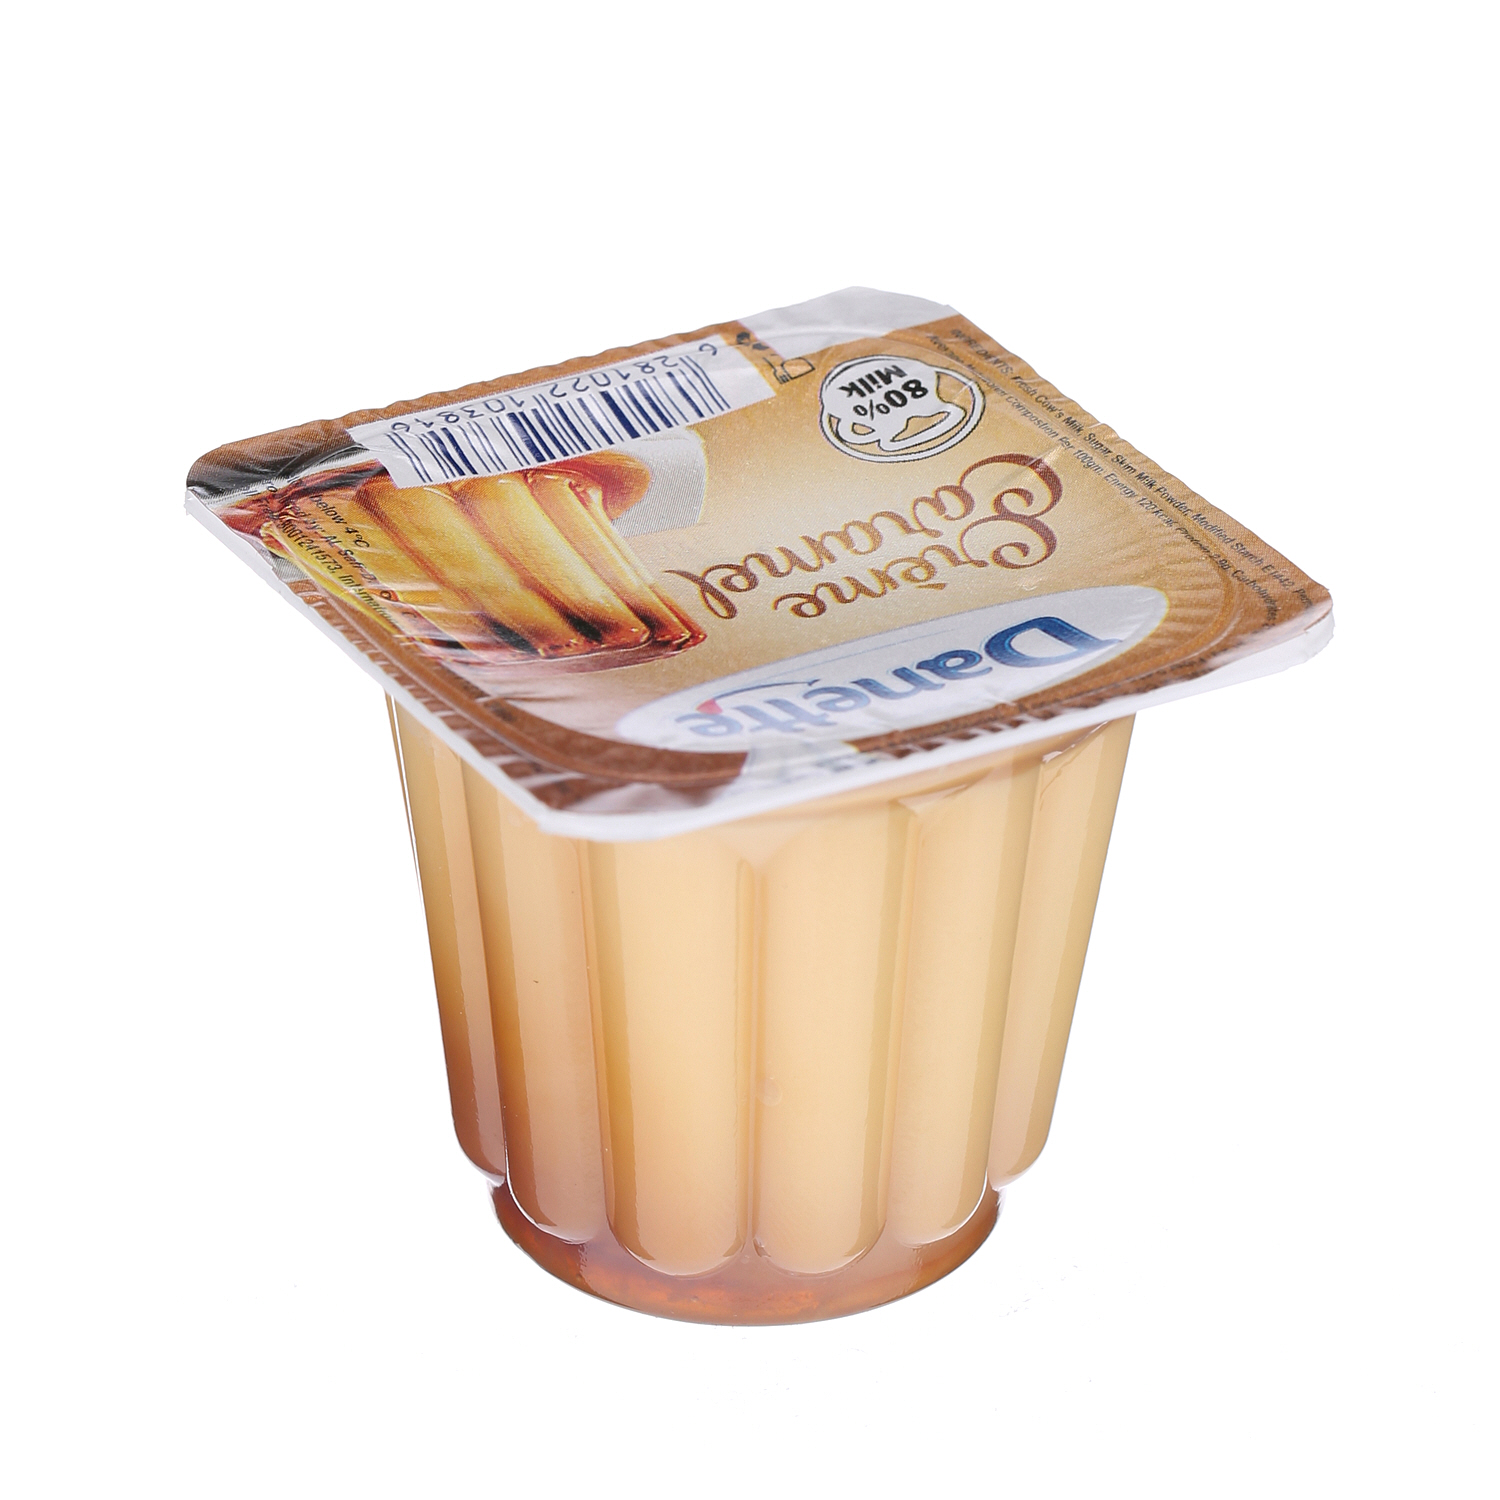 Al Safi Danone Danette Cream Dessert Caramel 80 g